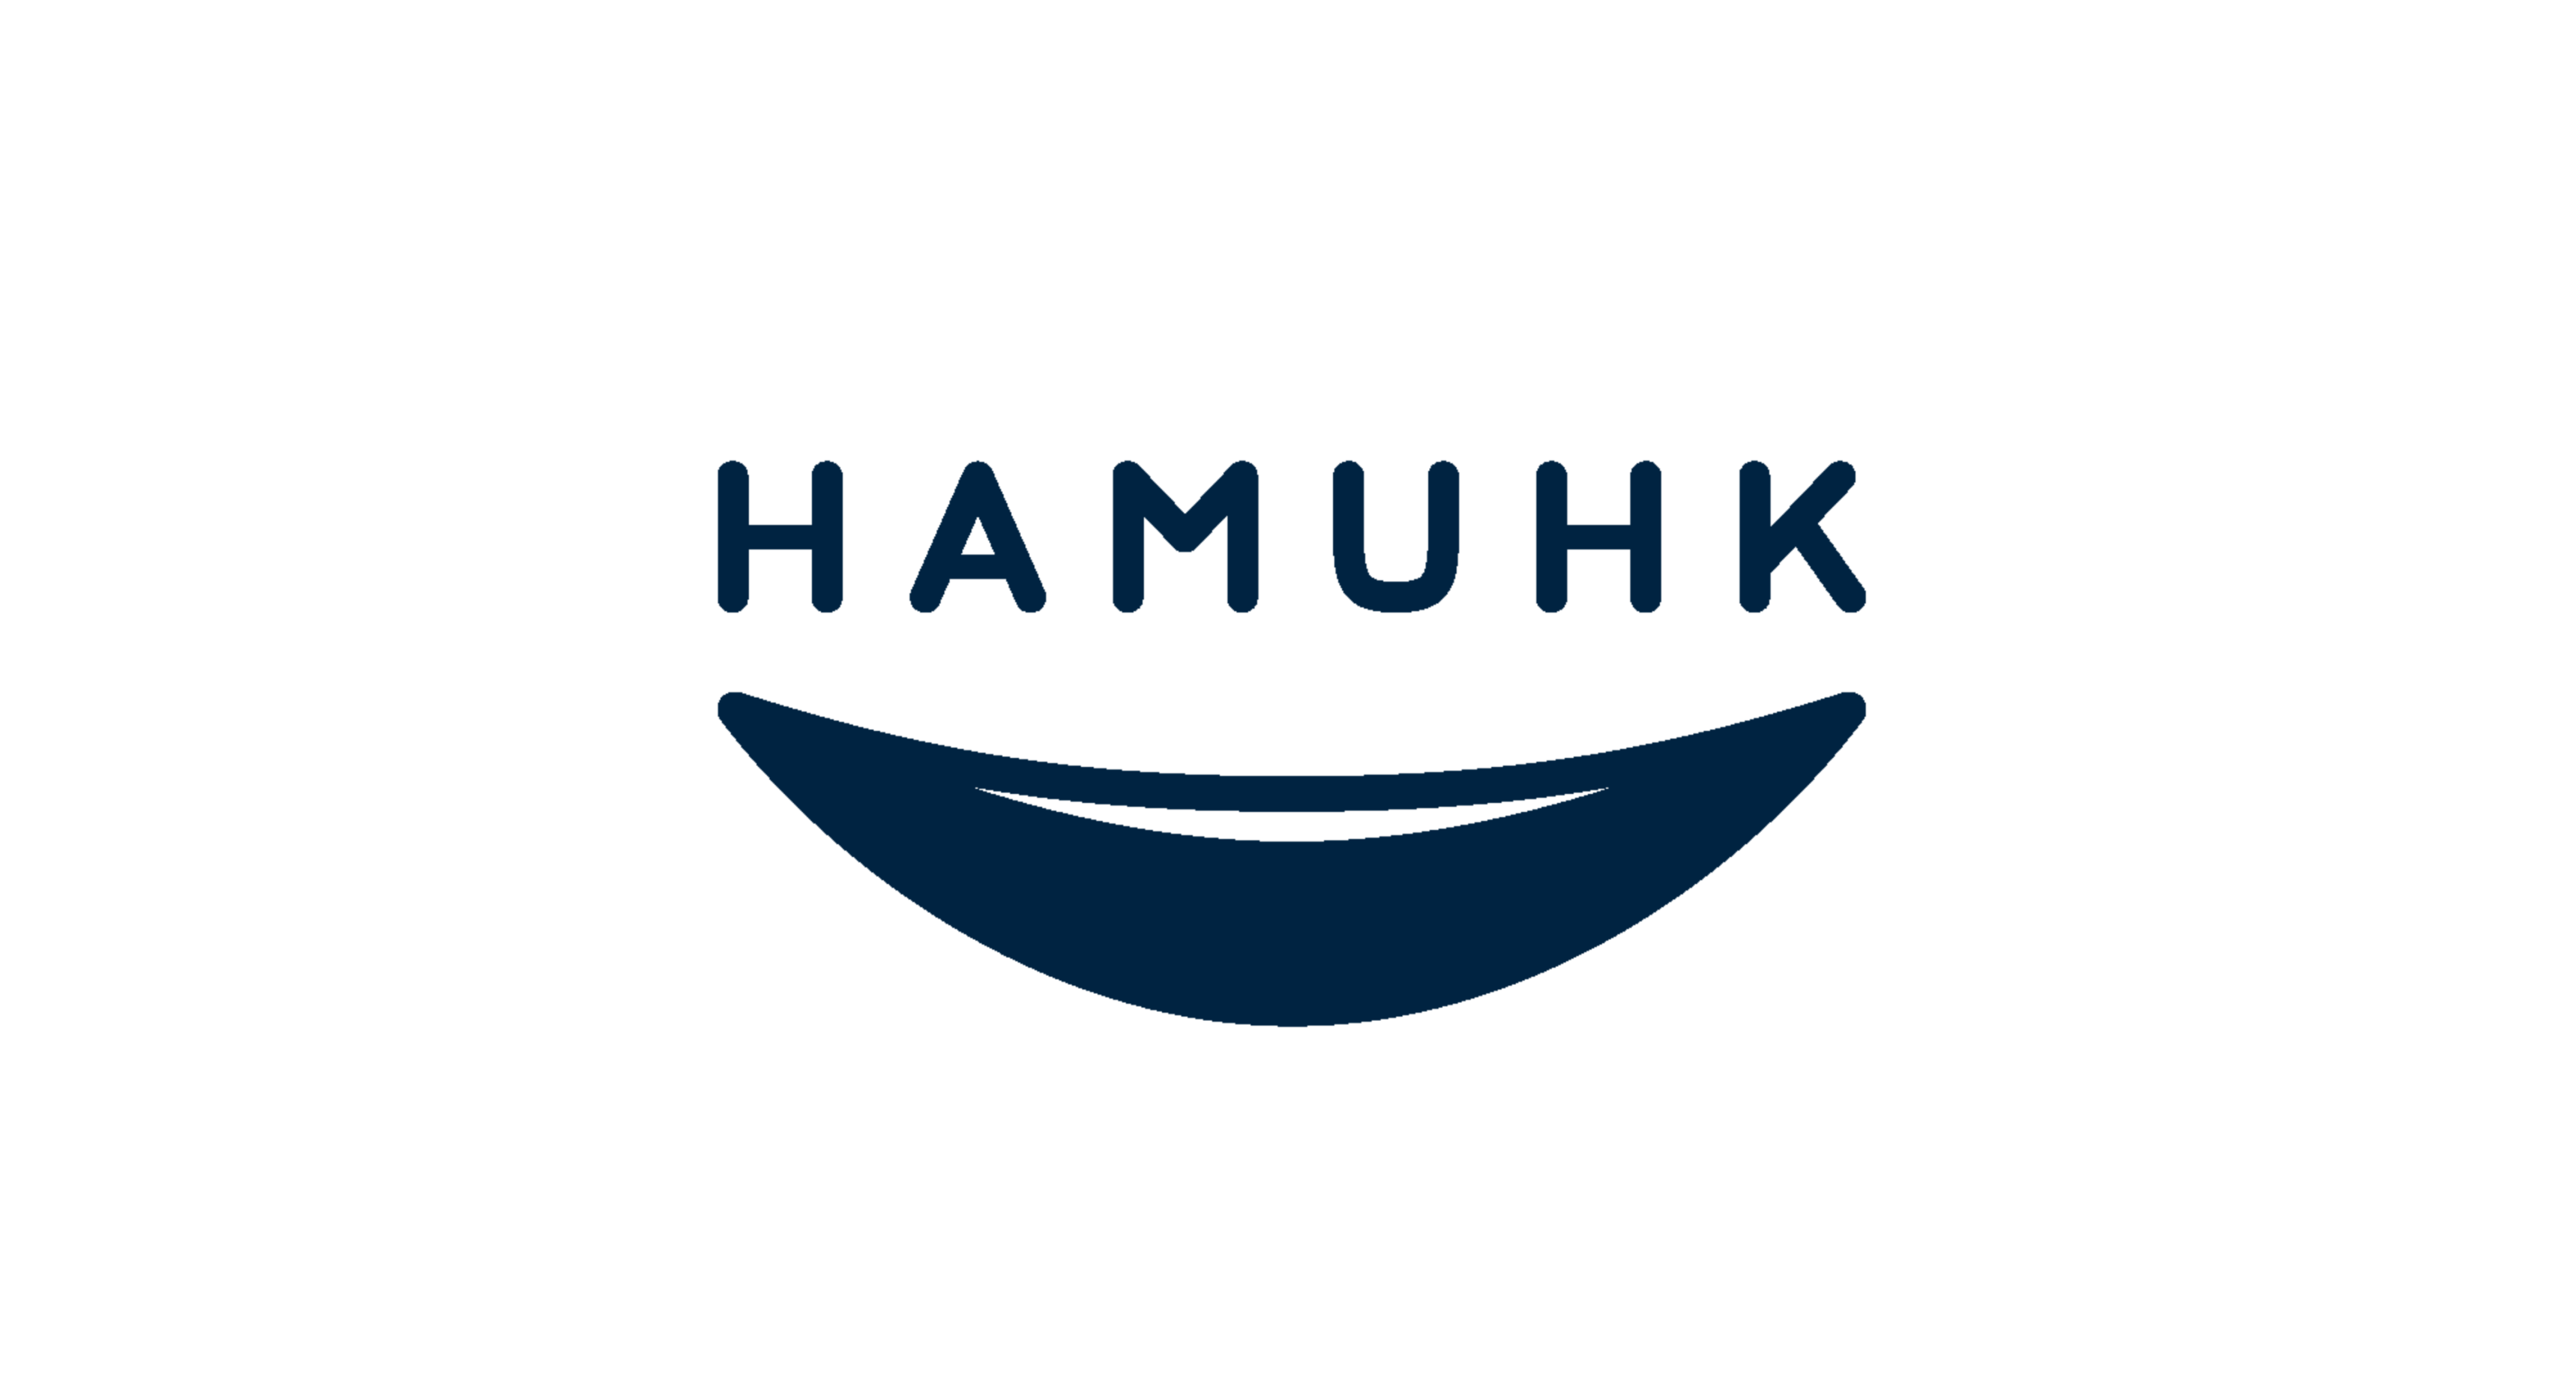 Hamuhk